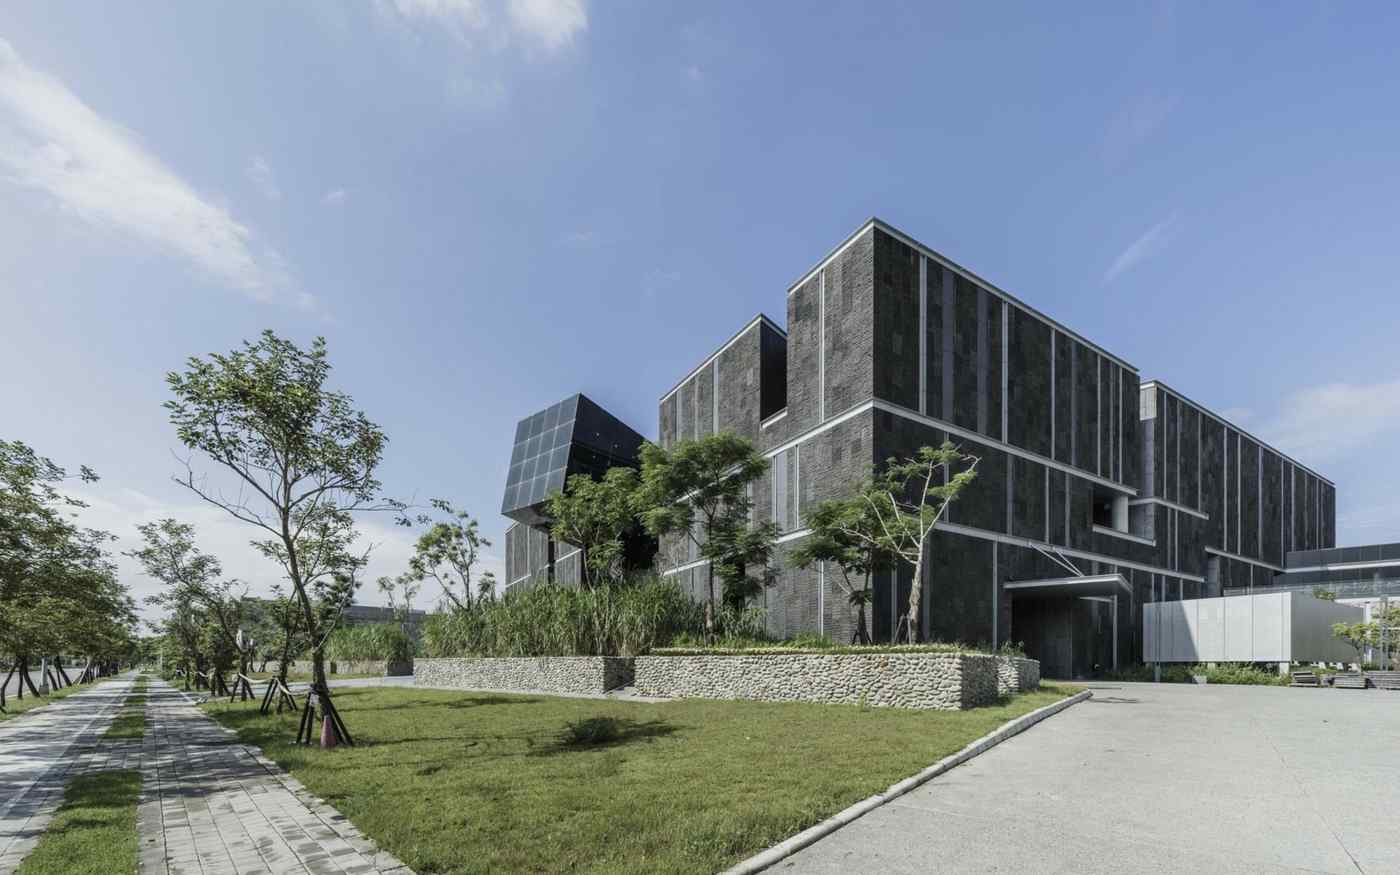 Museumsgebäude mit Basalt für die Fassade für eine minimalistische Optik